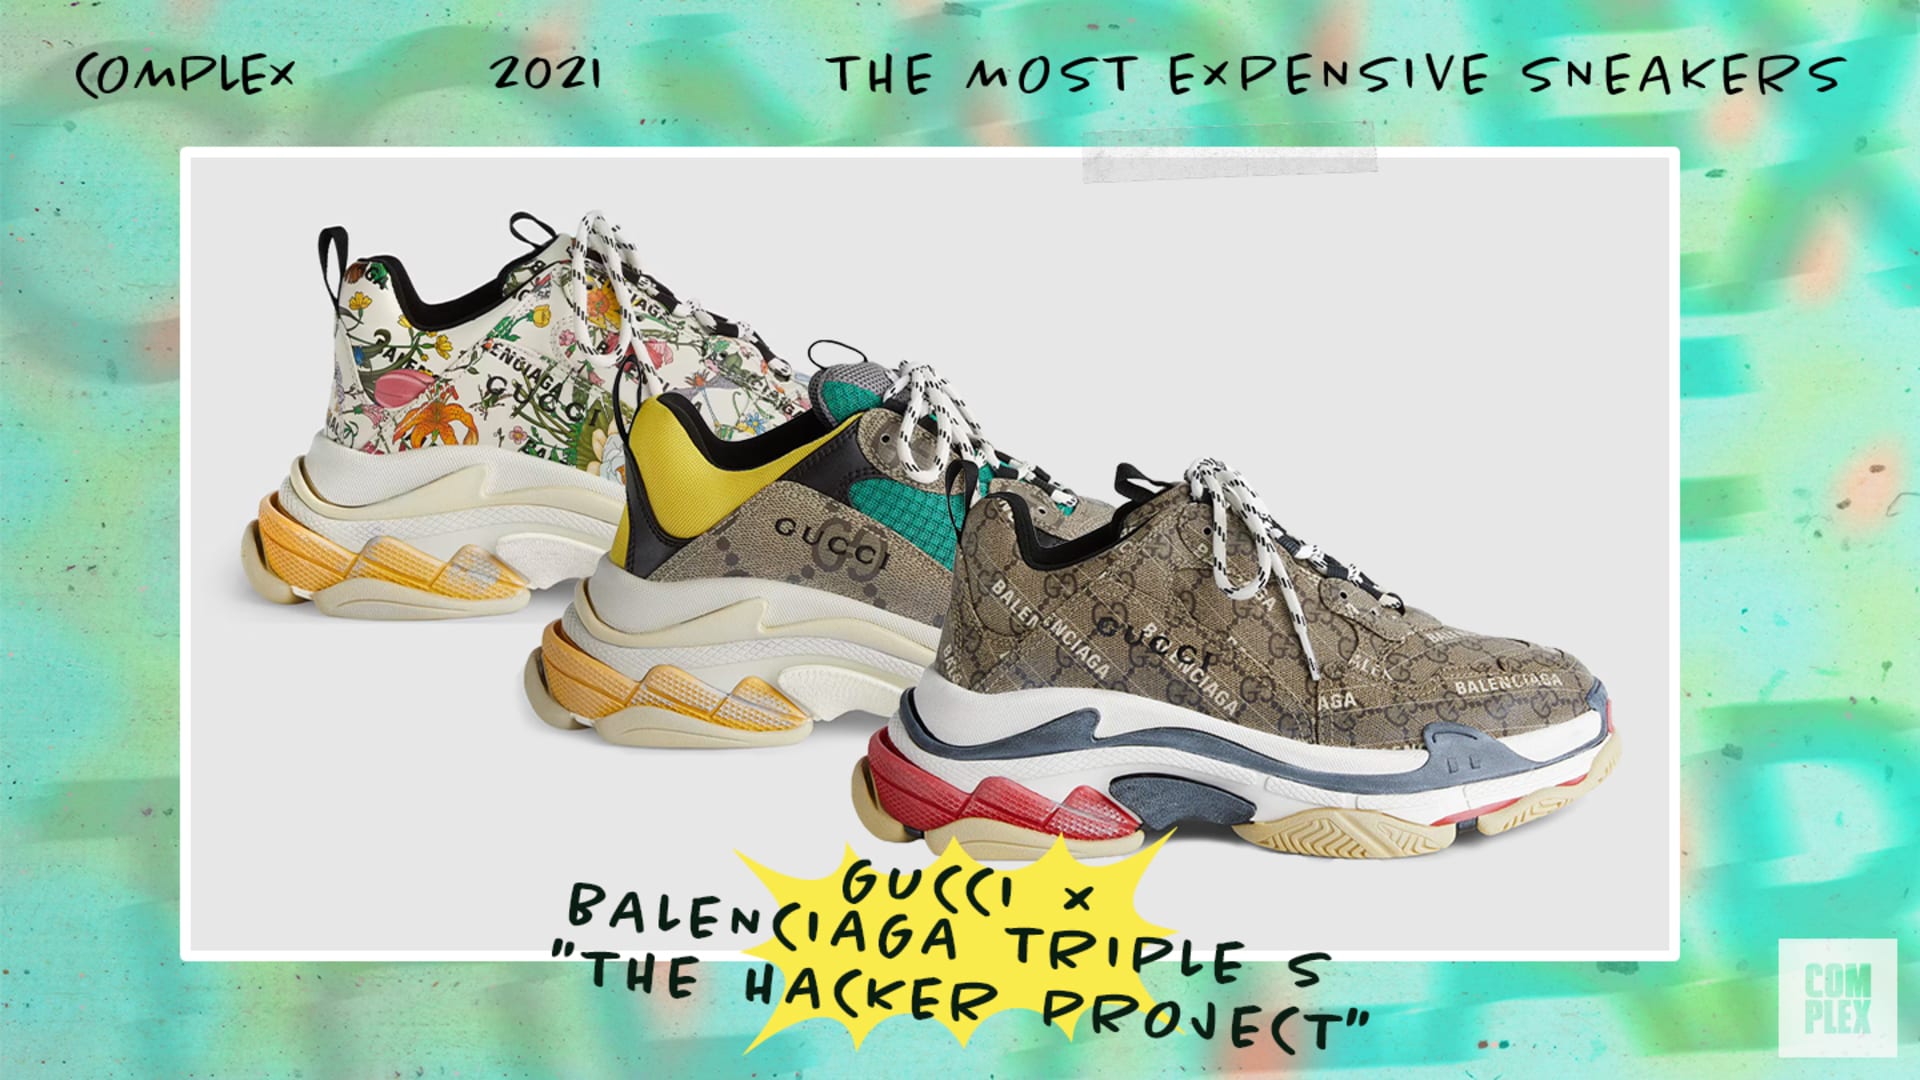 Gucci x Balenciaga Triple S The Hacker Project